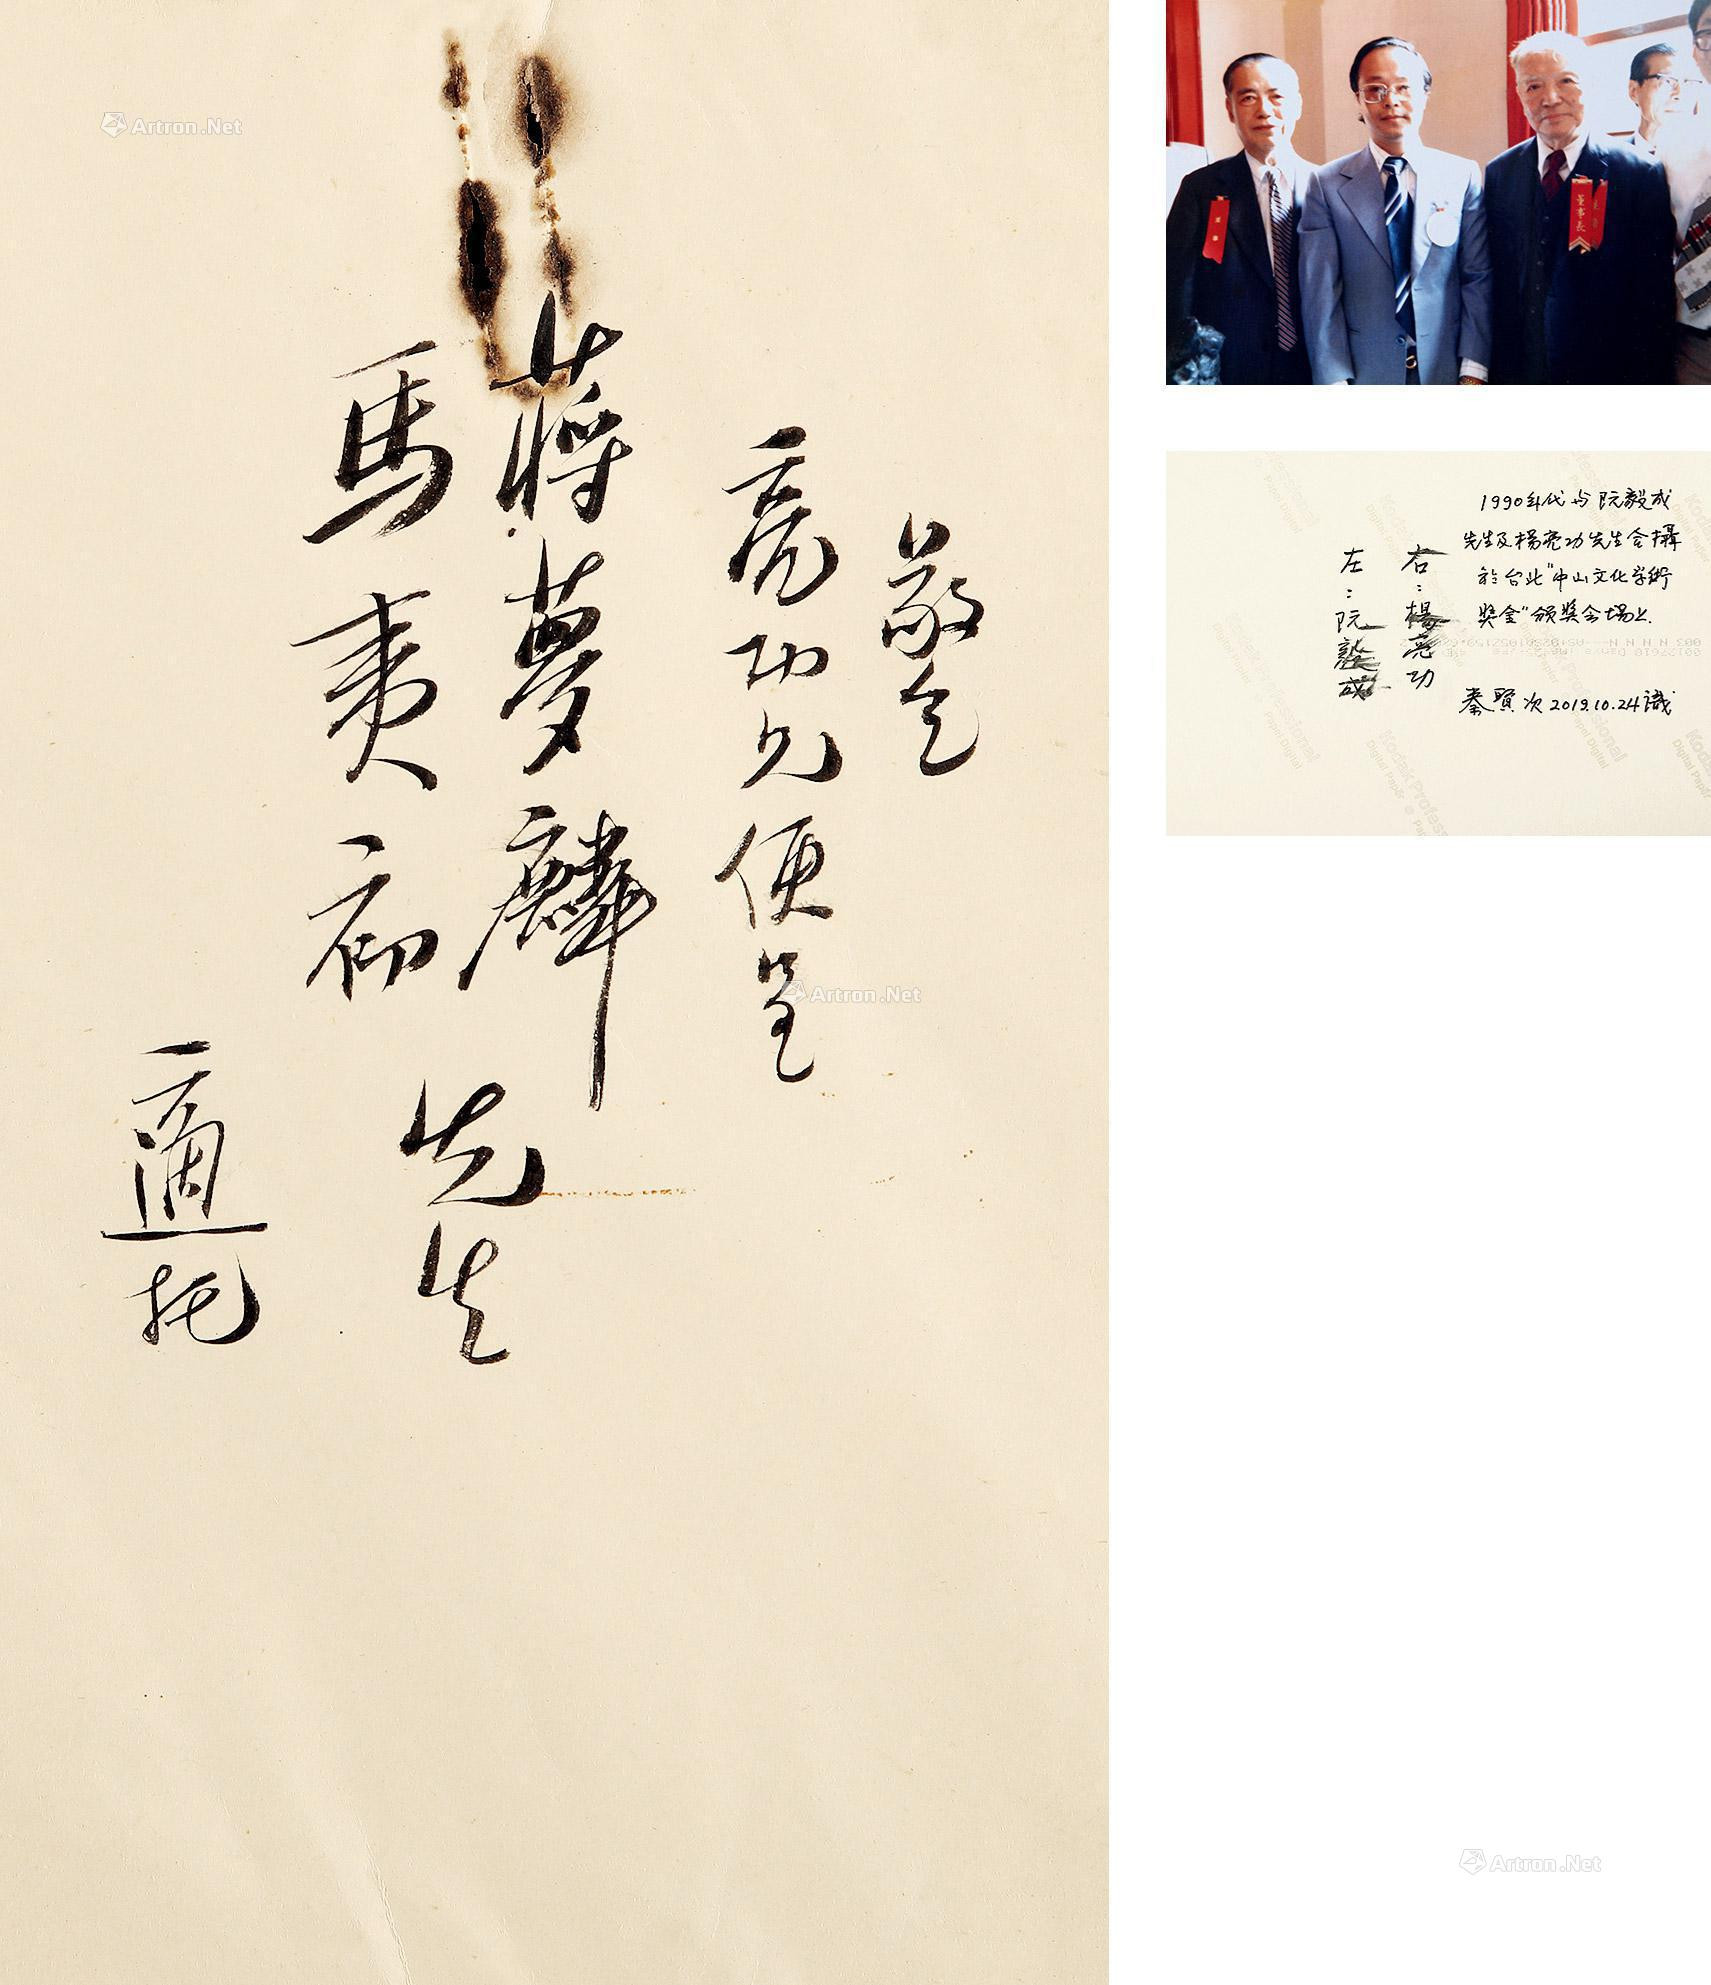 Chinese calligraphy cover by Hu Shi to Yang Lianggong， Jiang Menglin and Ma Xulun， along with inscribed photos of Yang Lianggong and Ruan Yicheng and Qin Xianci by Qin Xianci